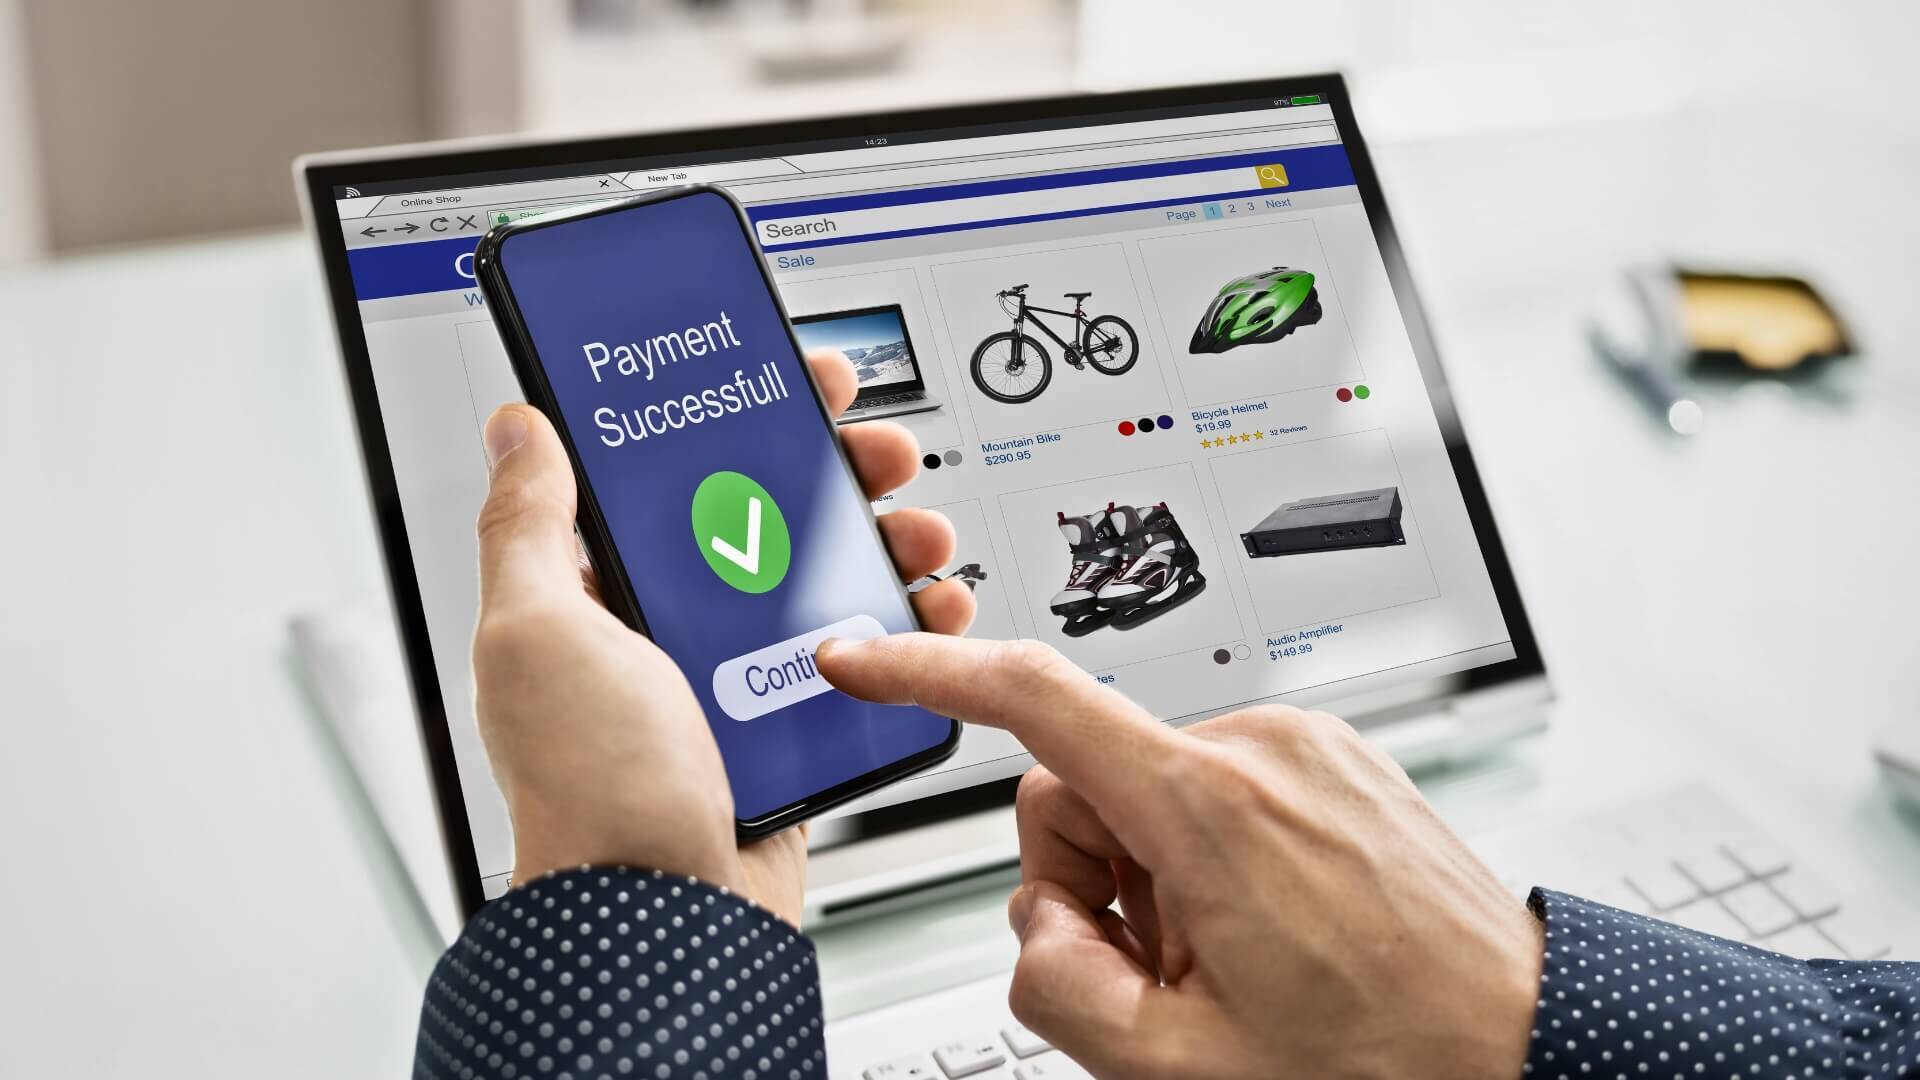 Изображение на компютър и телефон, чиито екрани изобразяват потребителски интерфейс на успешно онлайн разплащане.